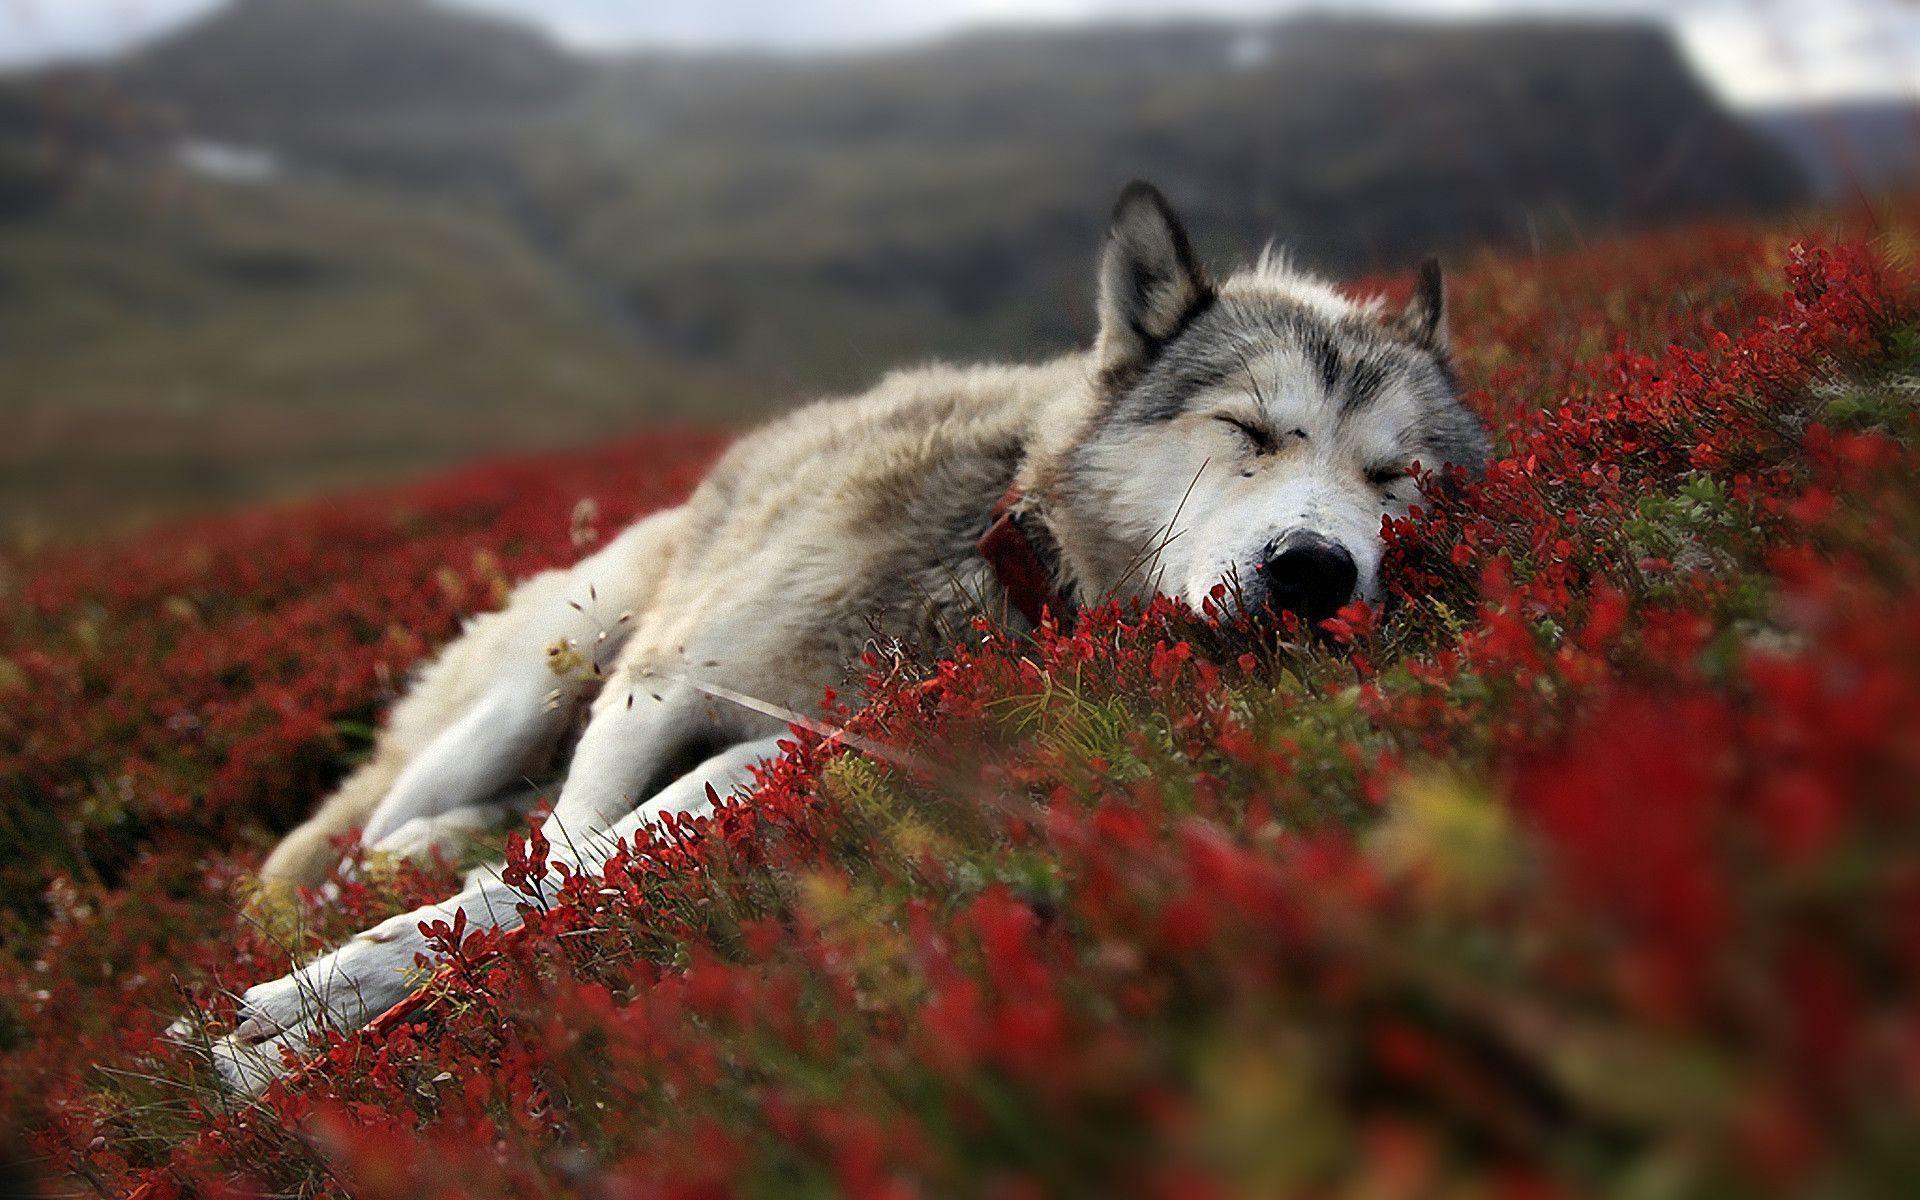 عکس فوق العاده زیبا از گرگ دوست داشتنی خوابیده